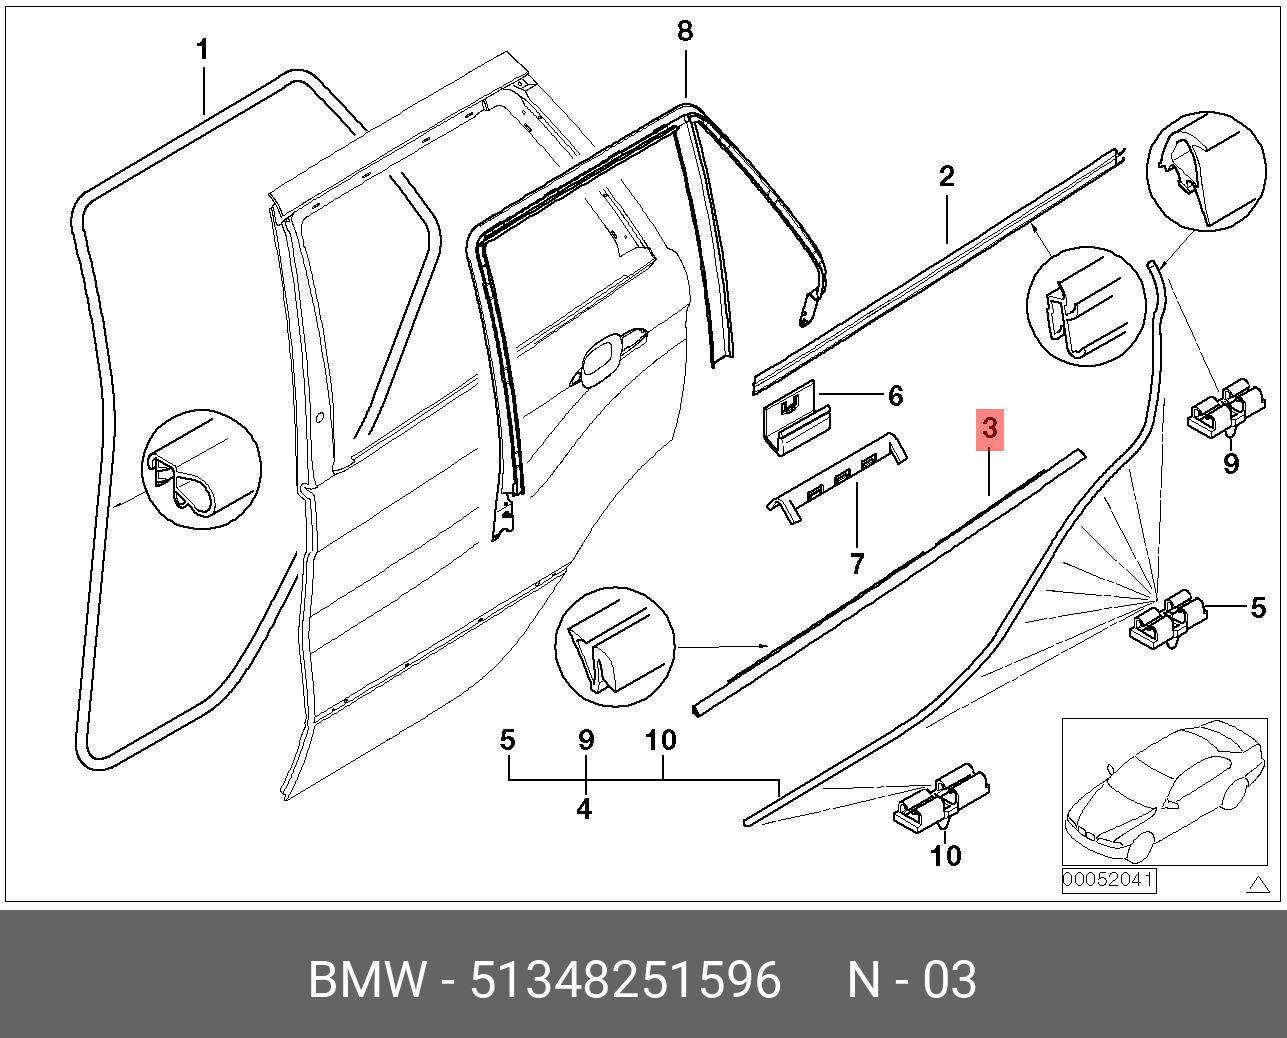 Задняя дверь х5 е53. Уплотнитель стекла двери БМВ е53. Уплотнитель стекла двери БМВ х5 е53. Накладка оконной рамы двери BMW e53. Уплотнитель двери БМВ х5 е53.